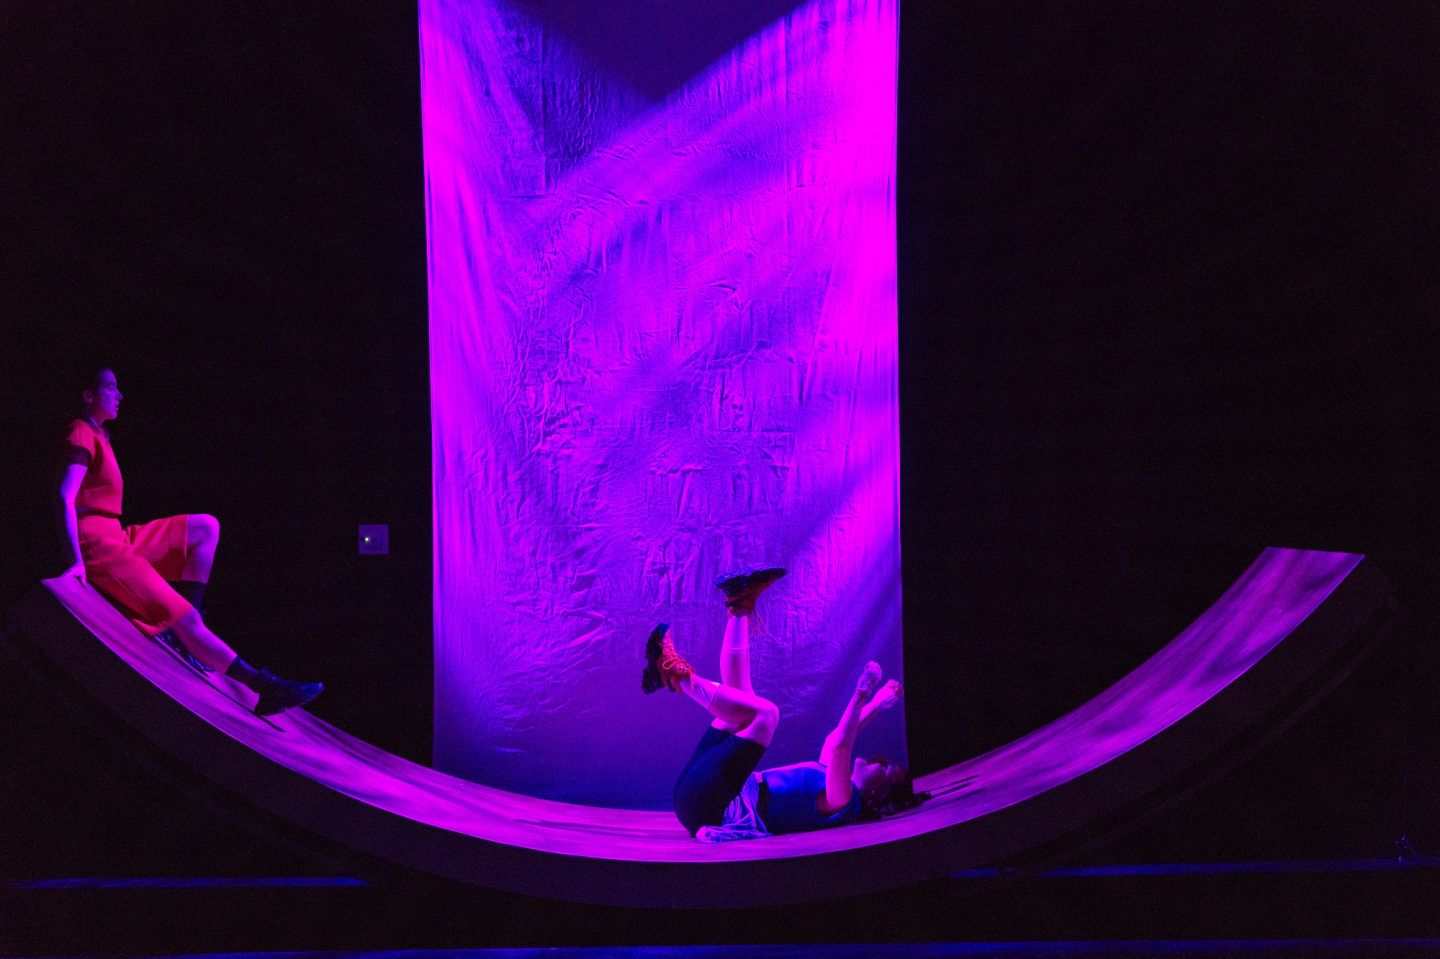 Das Bild zeigt zwei Personen auf einer großen Wippe. Eine sitzt an einer oberen Kanten und blickt zu der anderen Person, die strampelnd in der Mitte liegt.